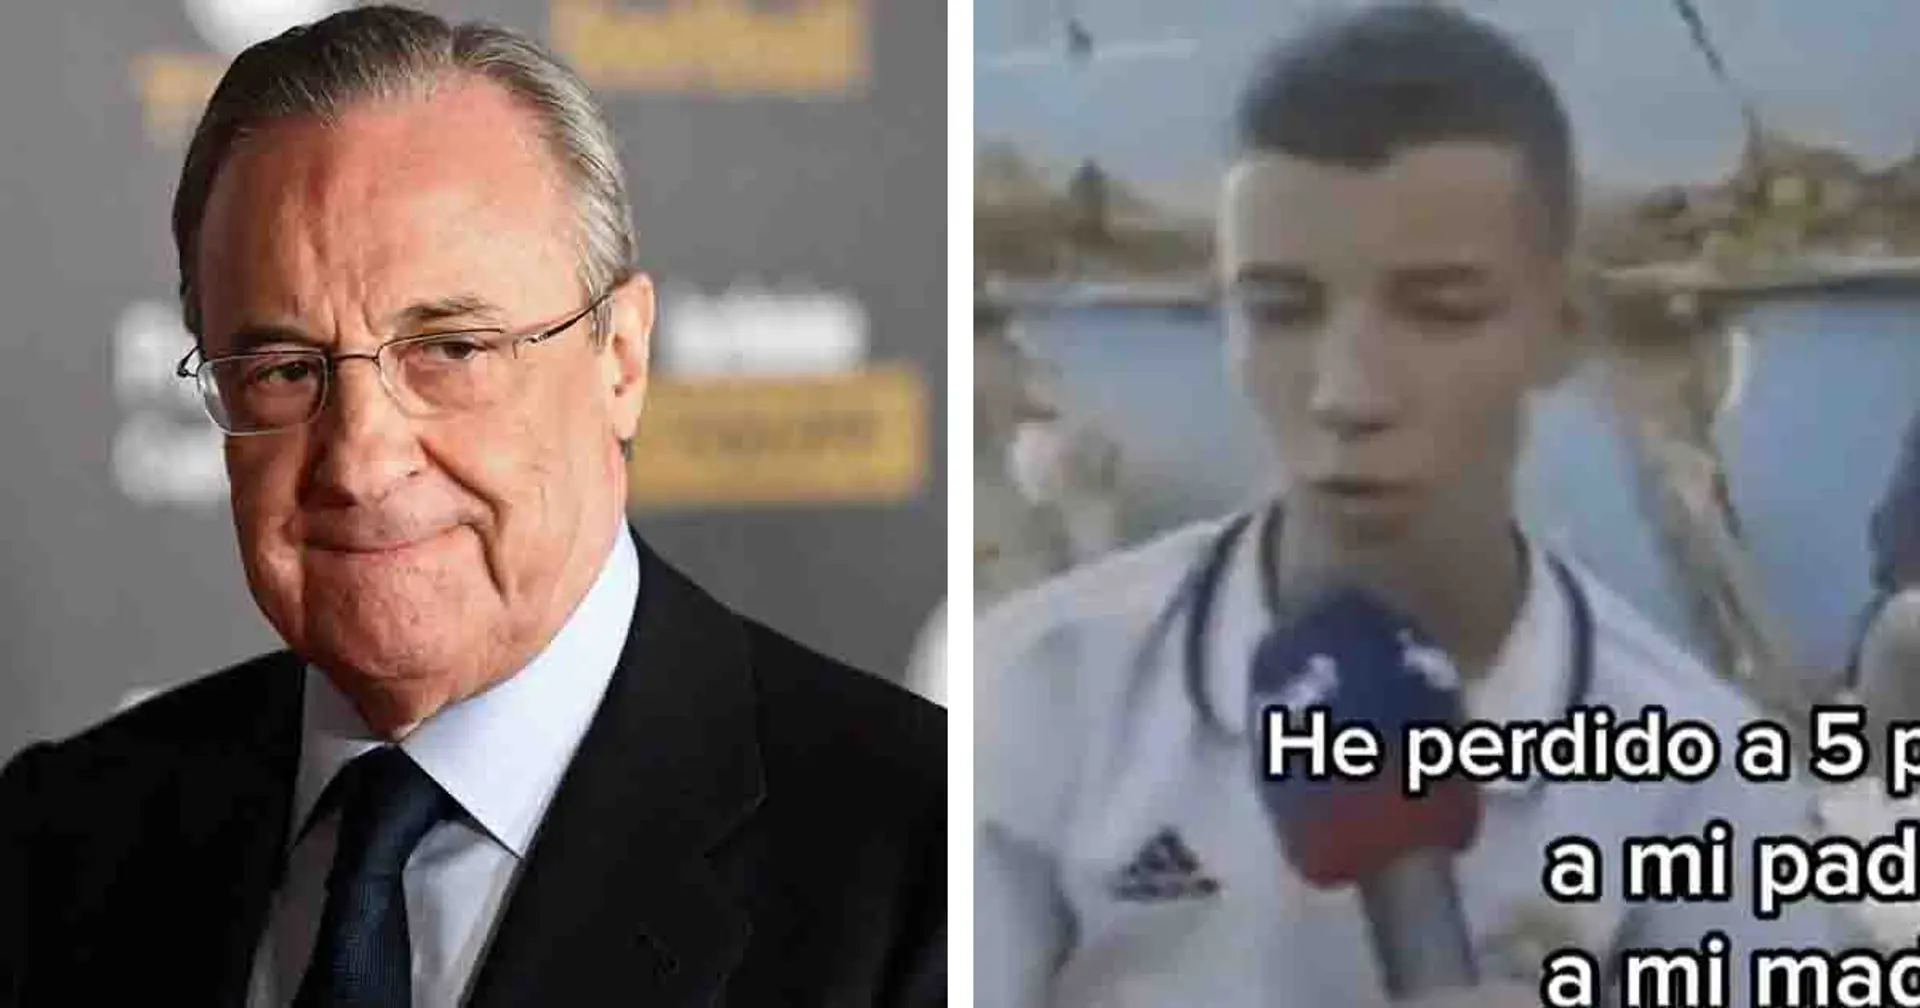 El Real Madrid busca al joven marroquí que perdió a cinco familiares en el terremoto para ayudarle